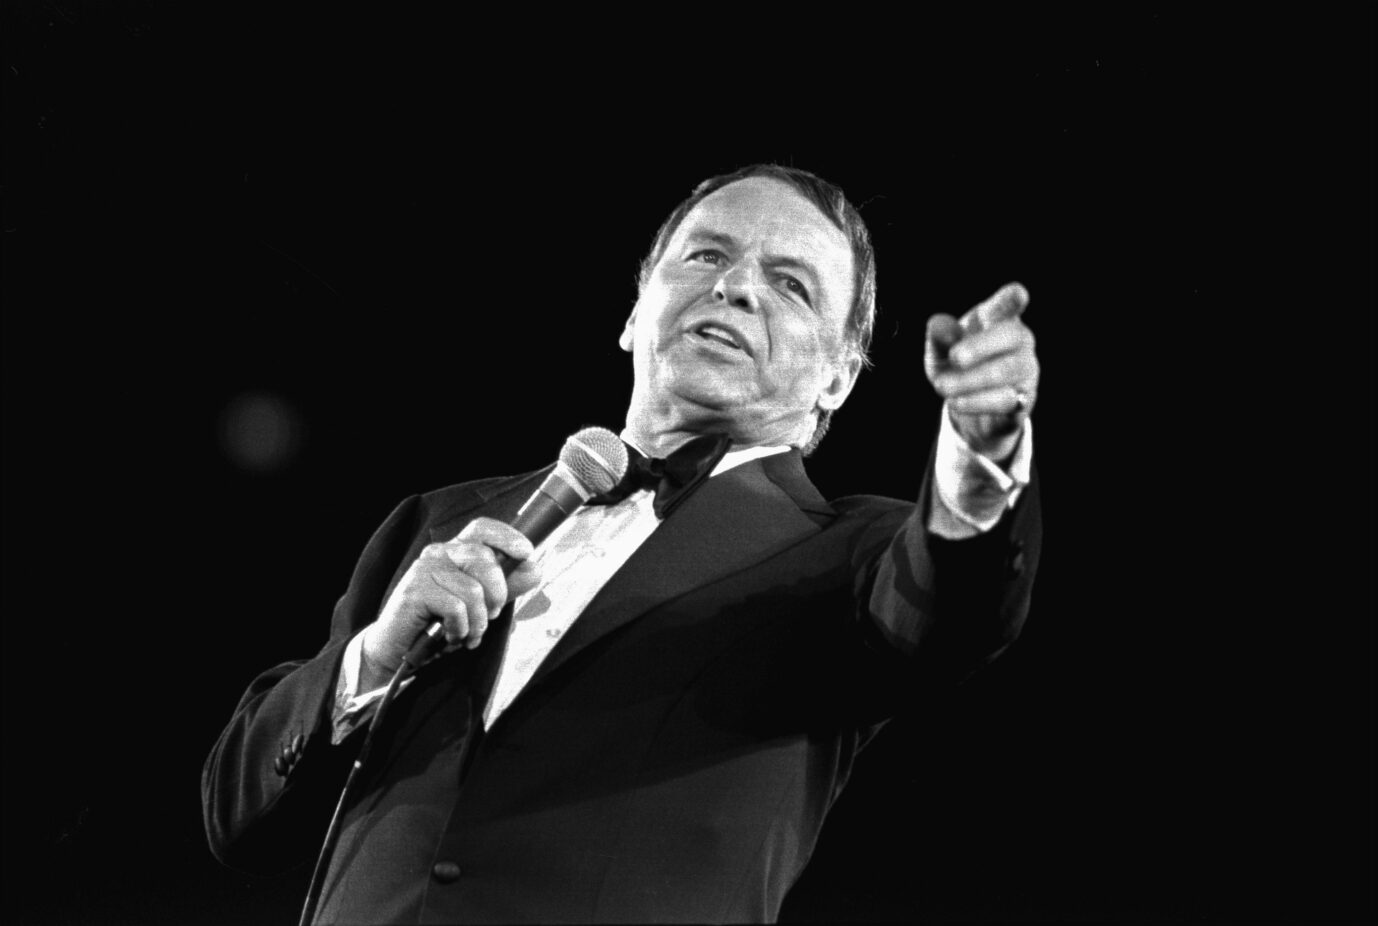 Frank Sinatra war ein Unterhaltungskünstler mit vielen Talenten.